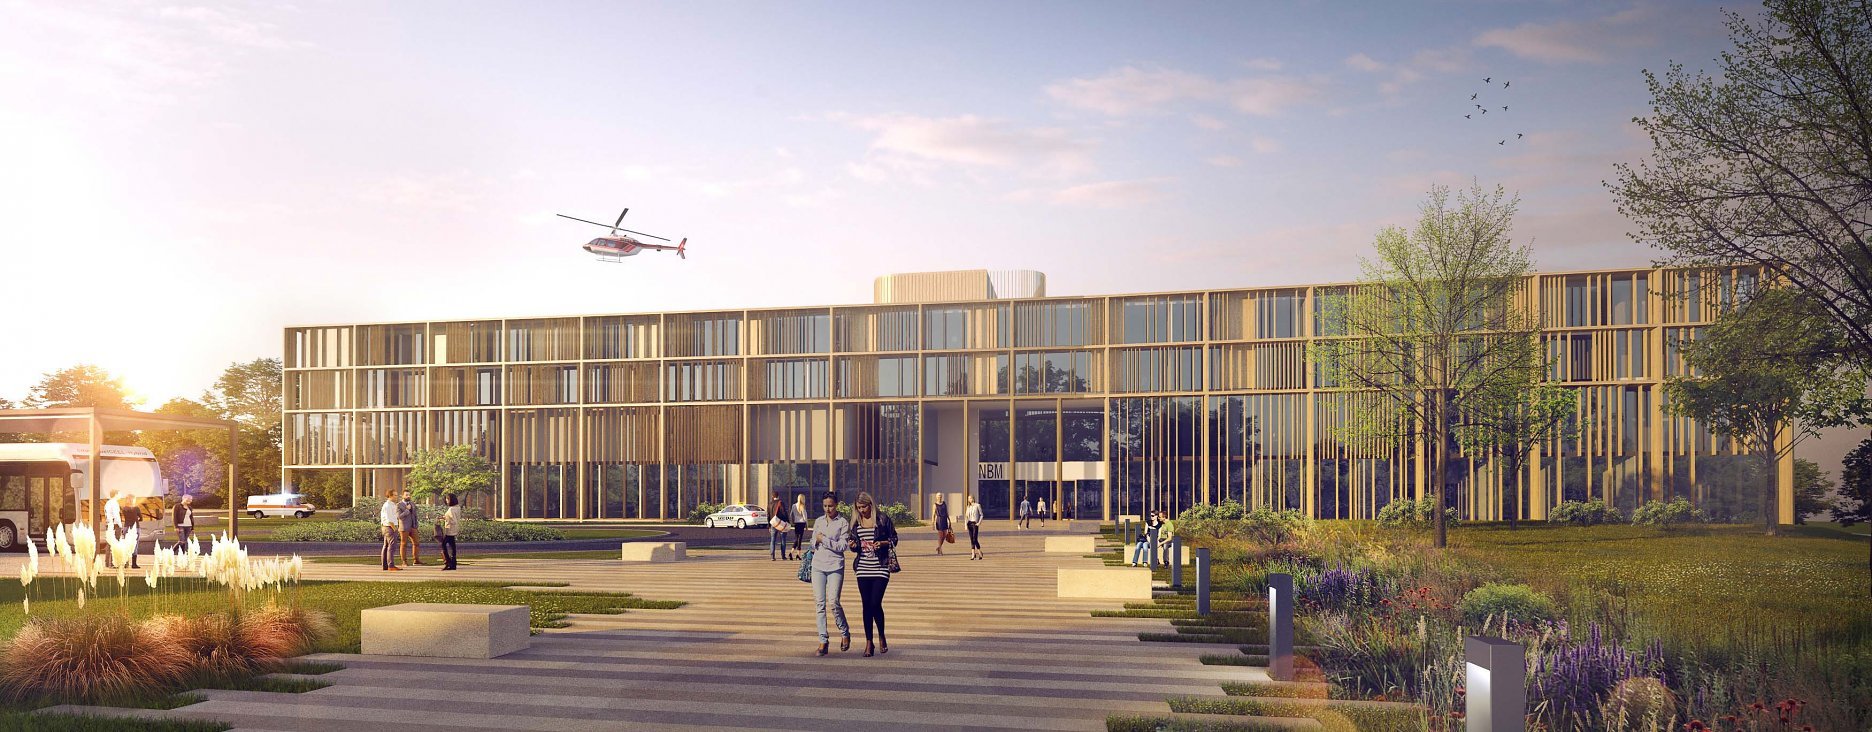 Nemocnica budúcnosti Martin - vizualizácia víťazného súťažného návrhu ateliéru Pantograph